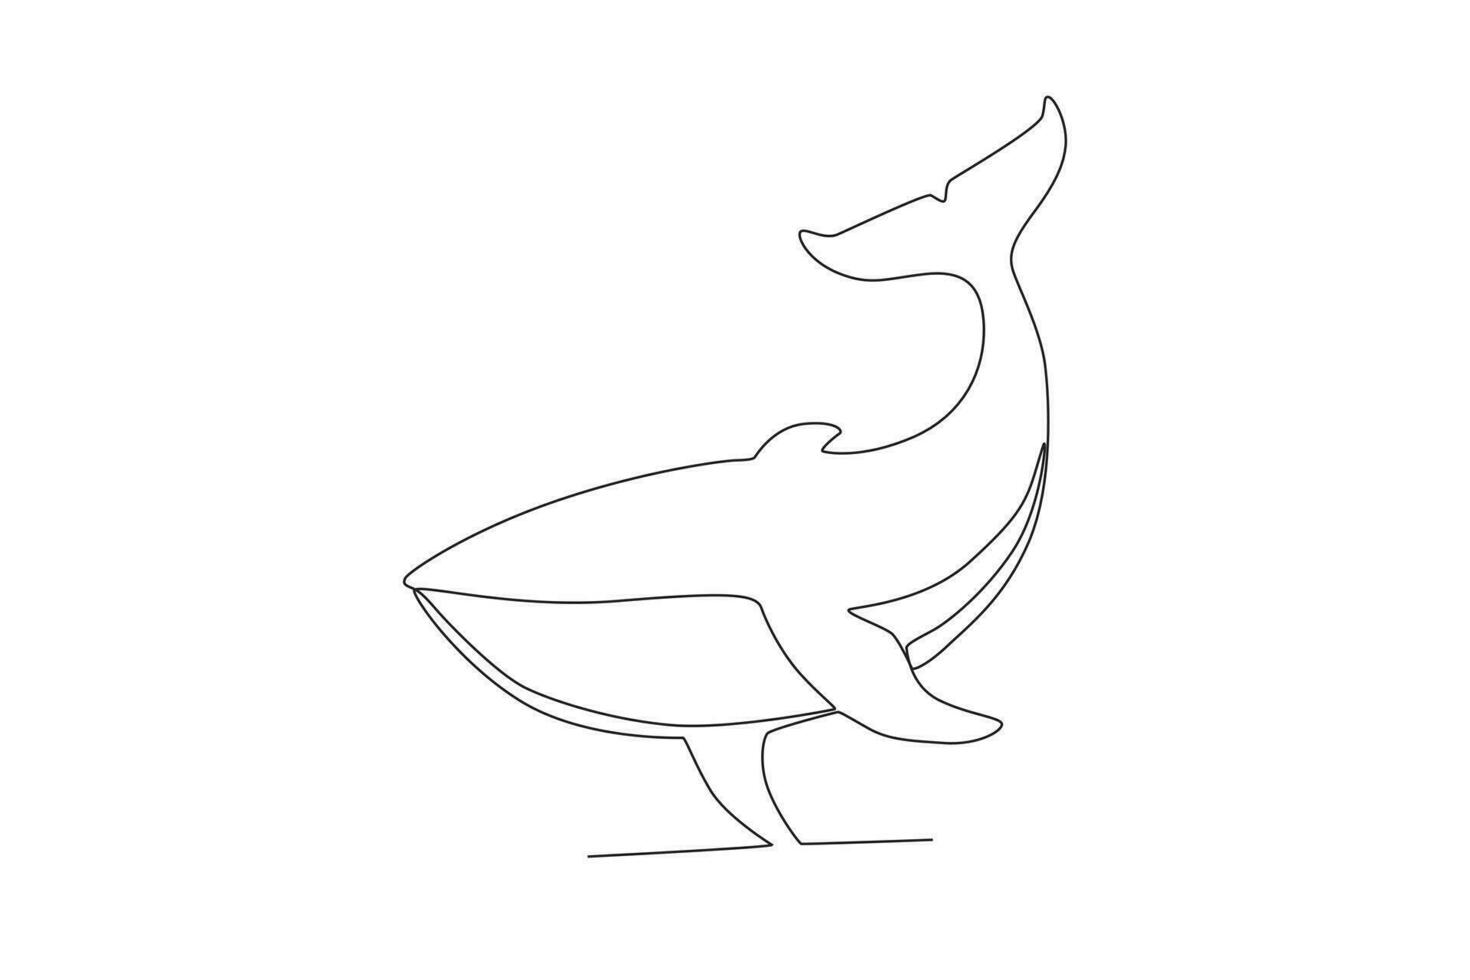 soltero uno línea dibujo de un ballena. continuo línea dibujar diseño gráfico vector ilustración.